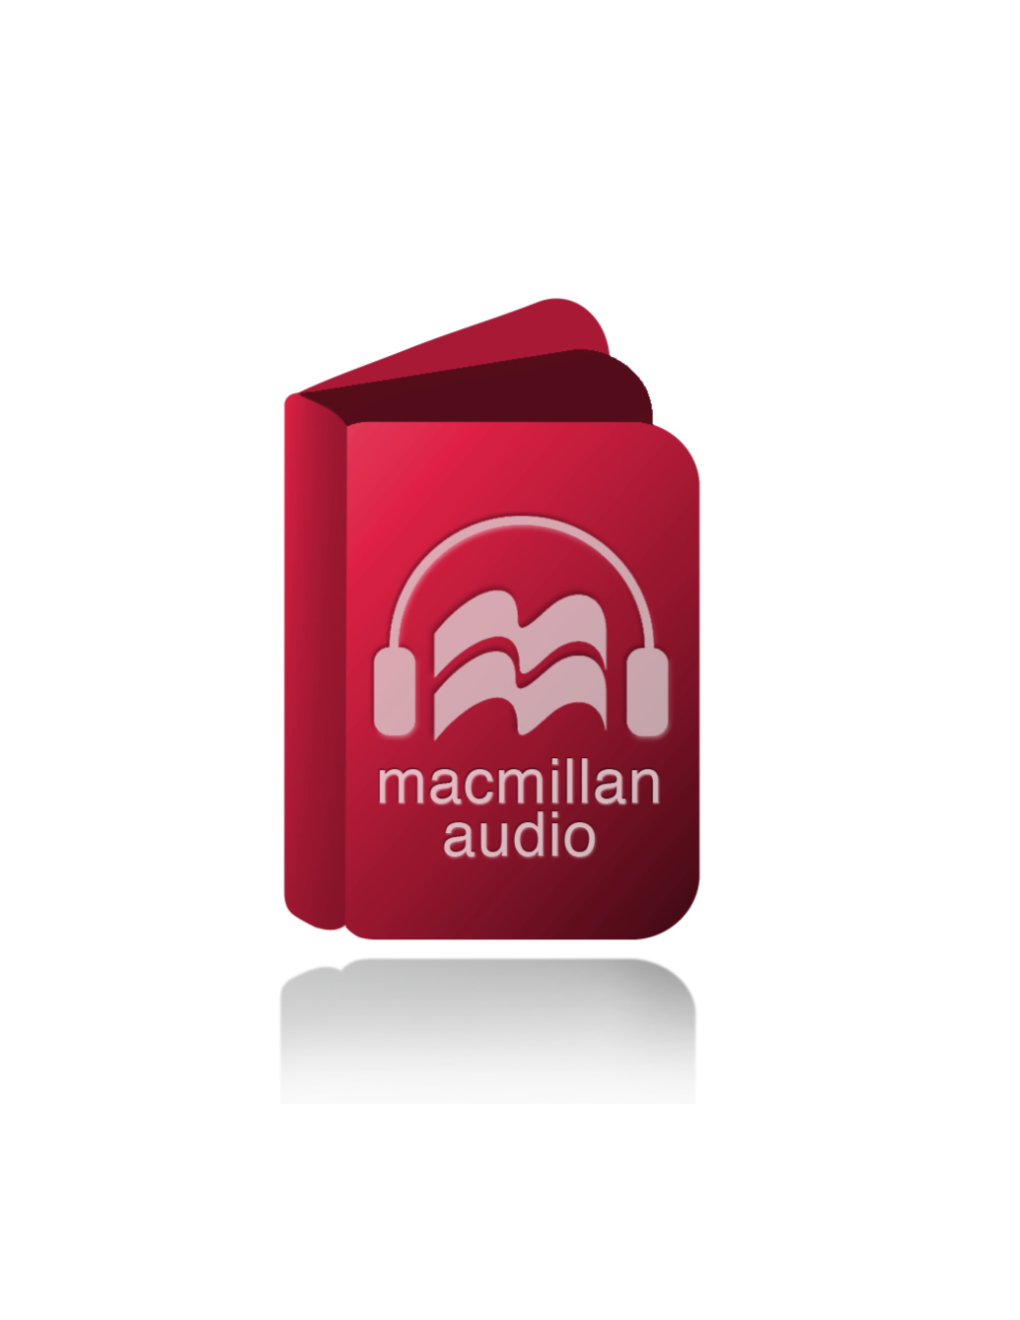 Macmillan Audio July 2019